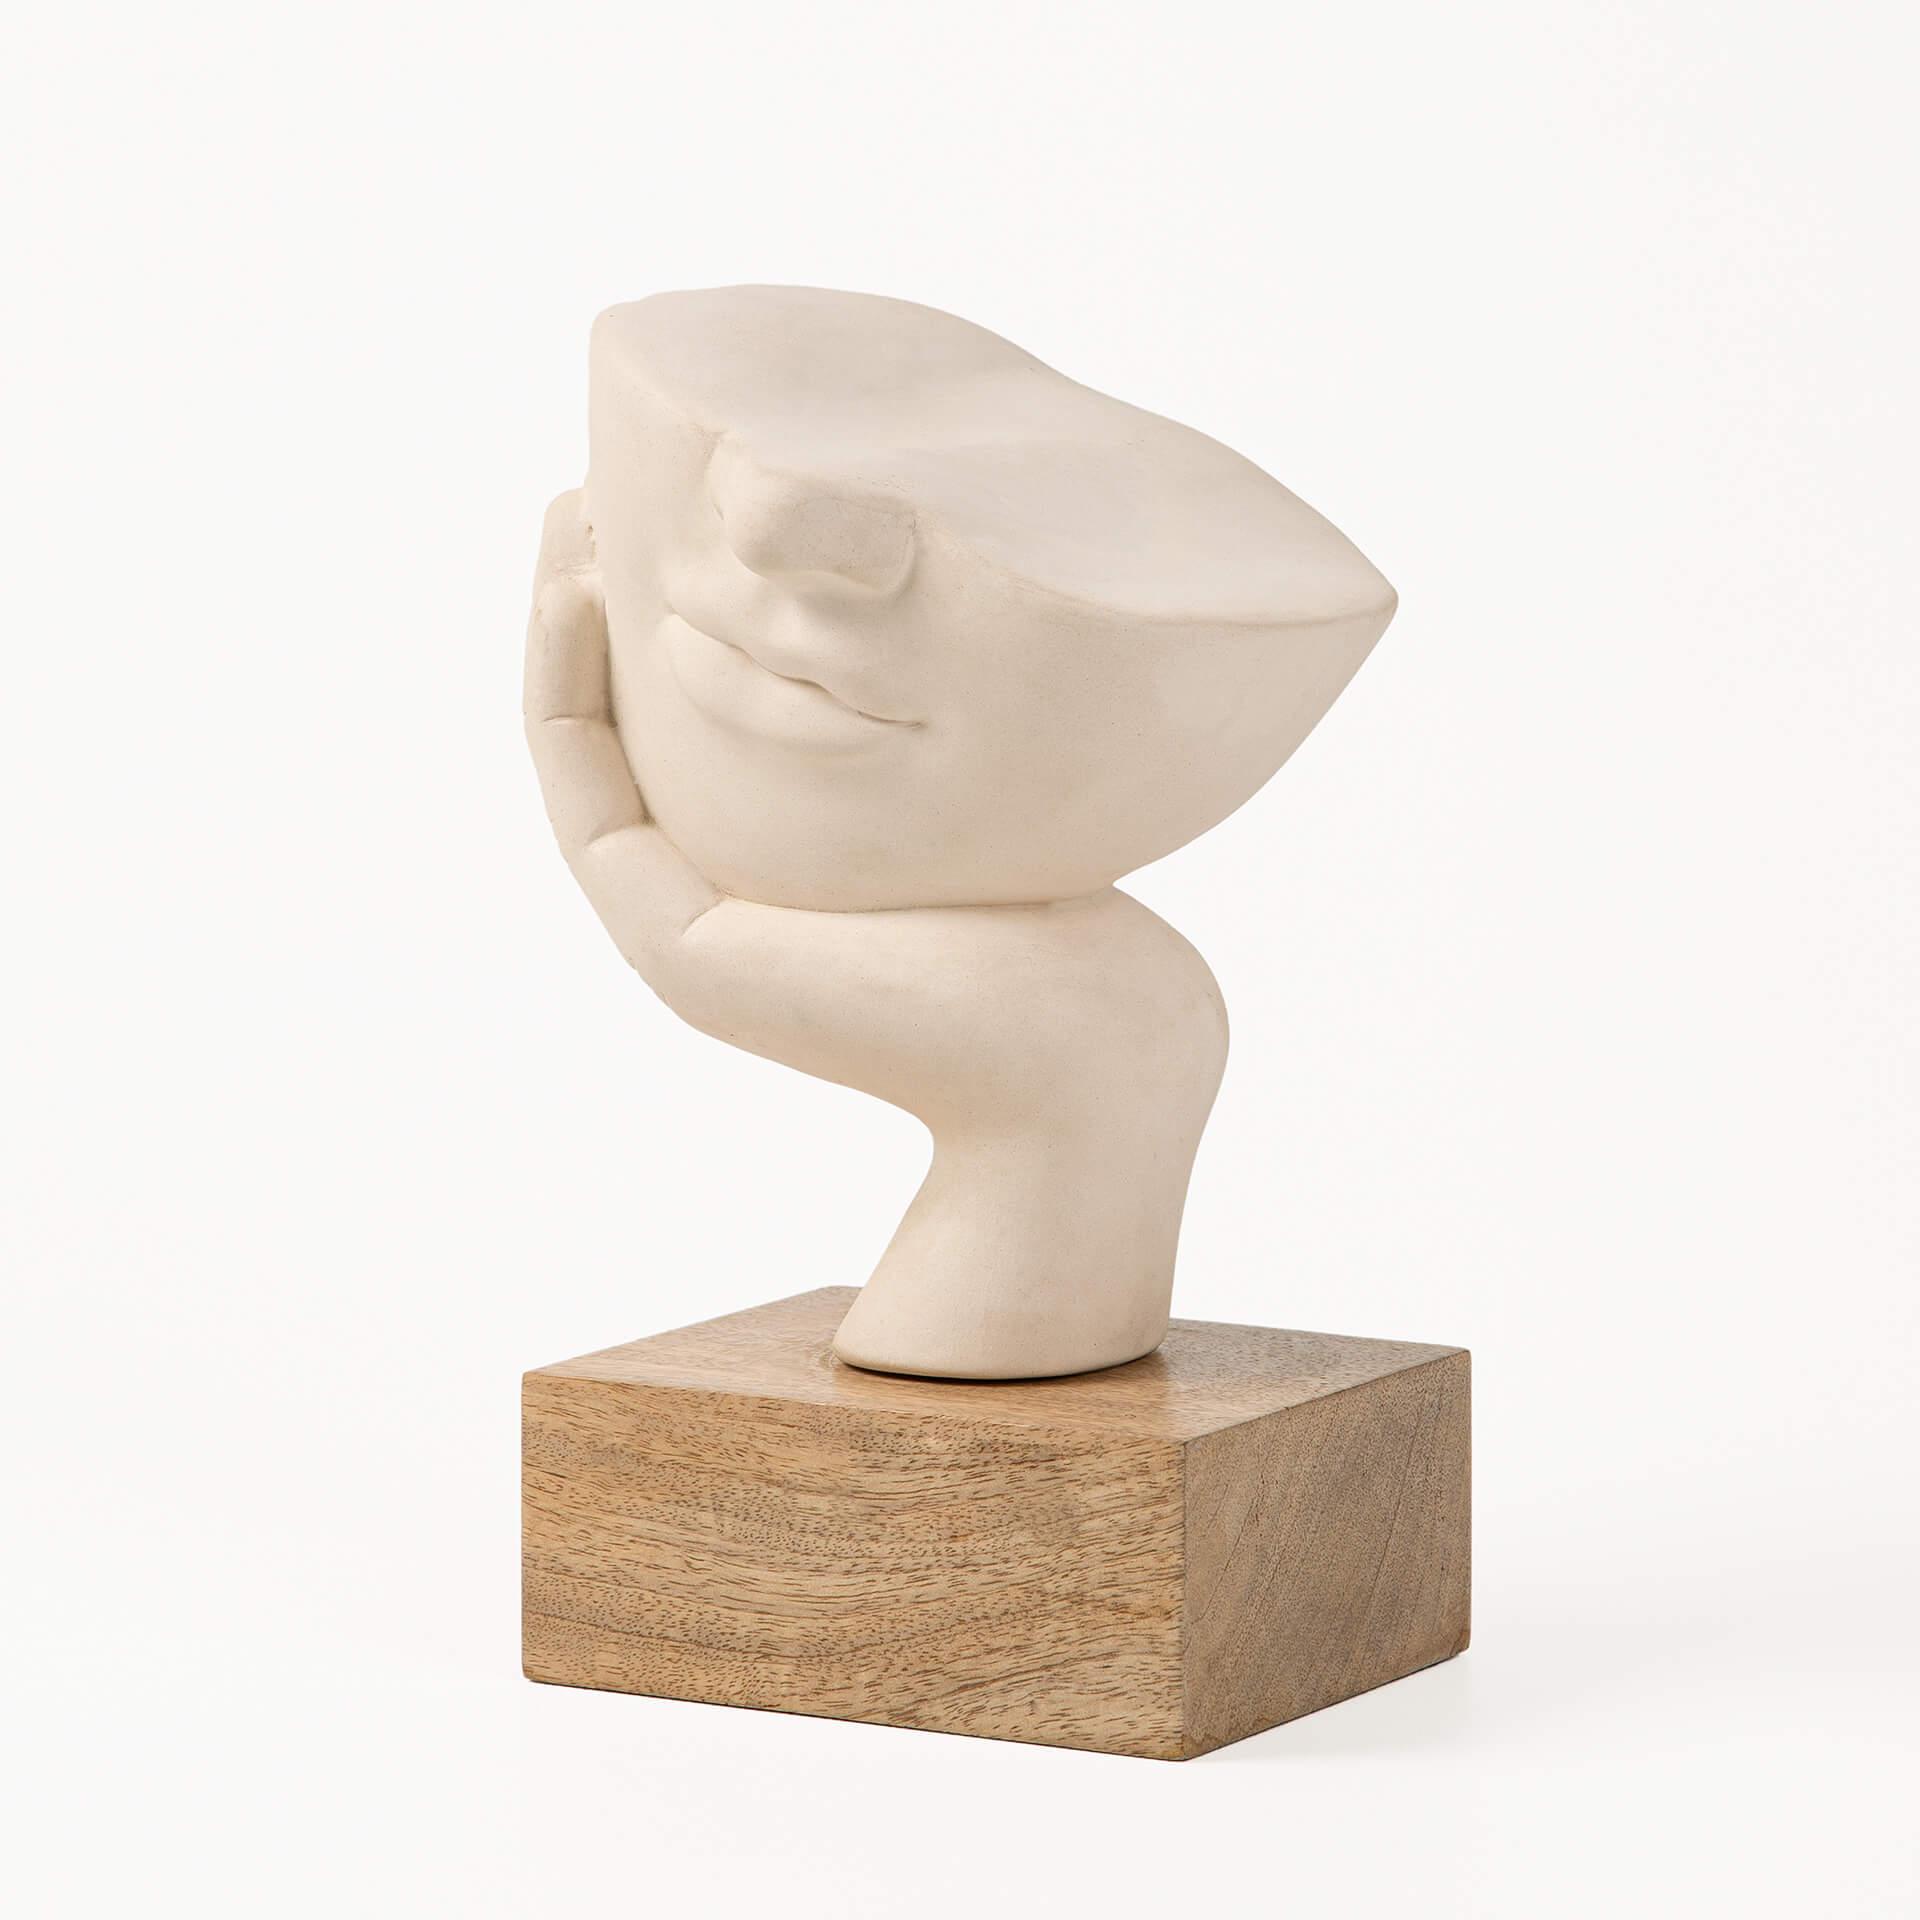 Restive Face Ceramic Sculpture